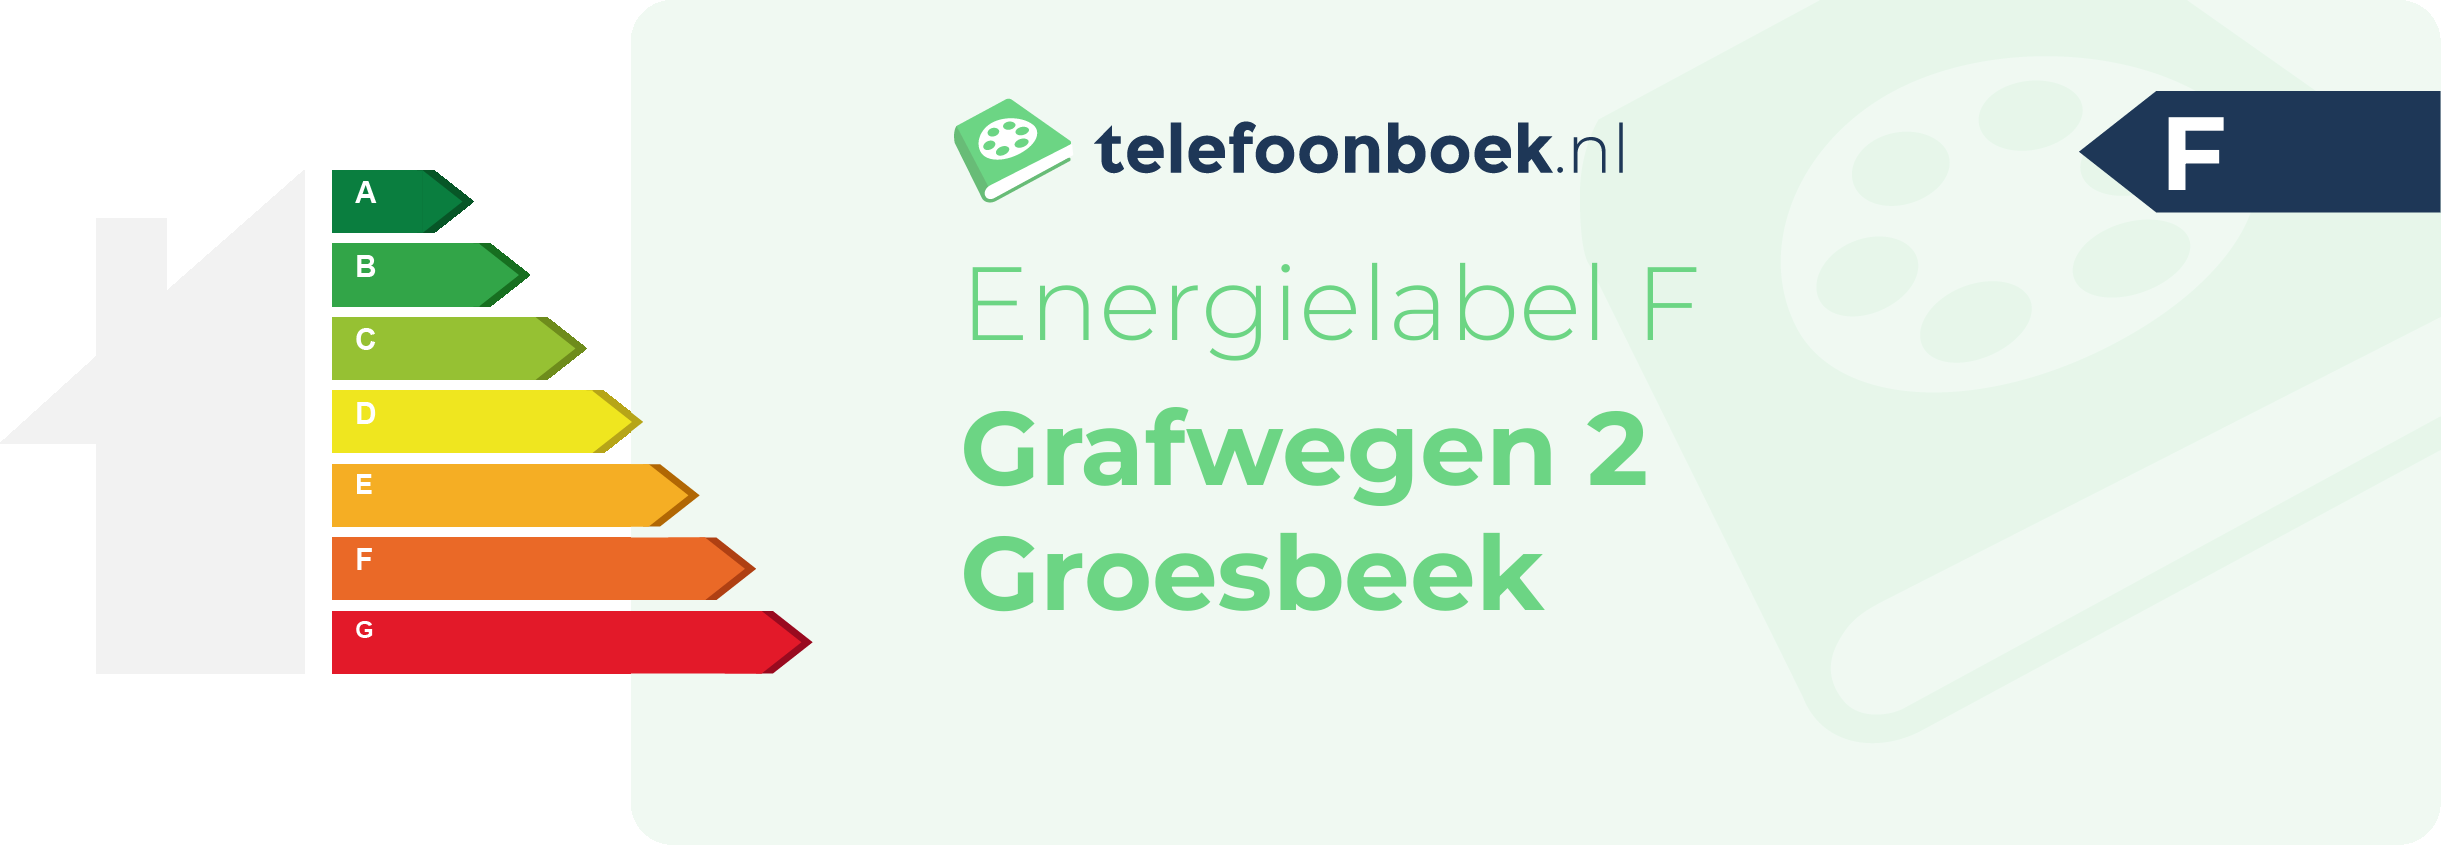 Energielabel Grafwegen 2 Groesbeek